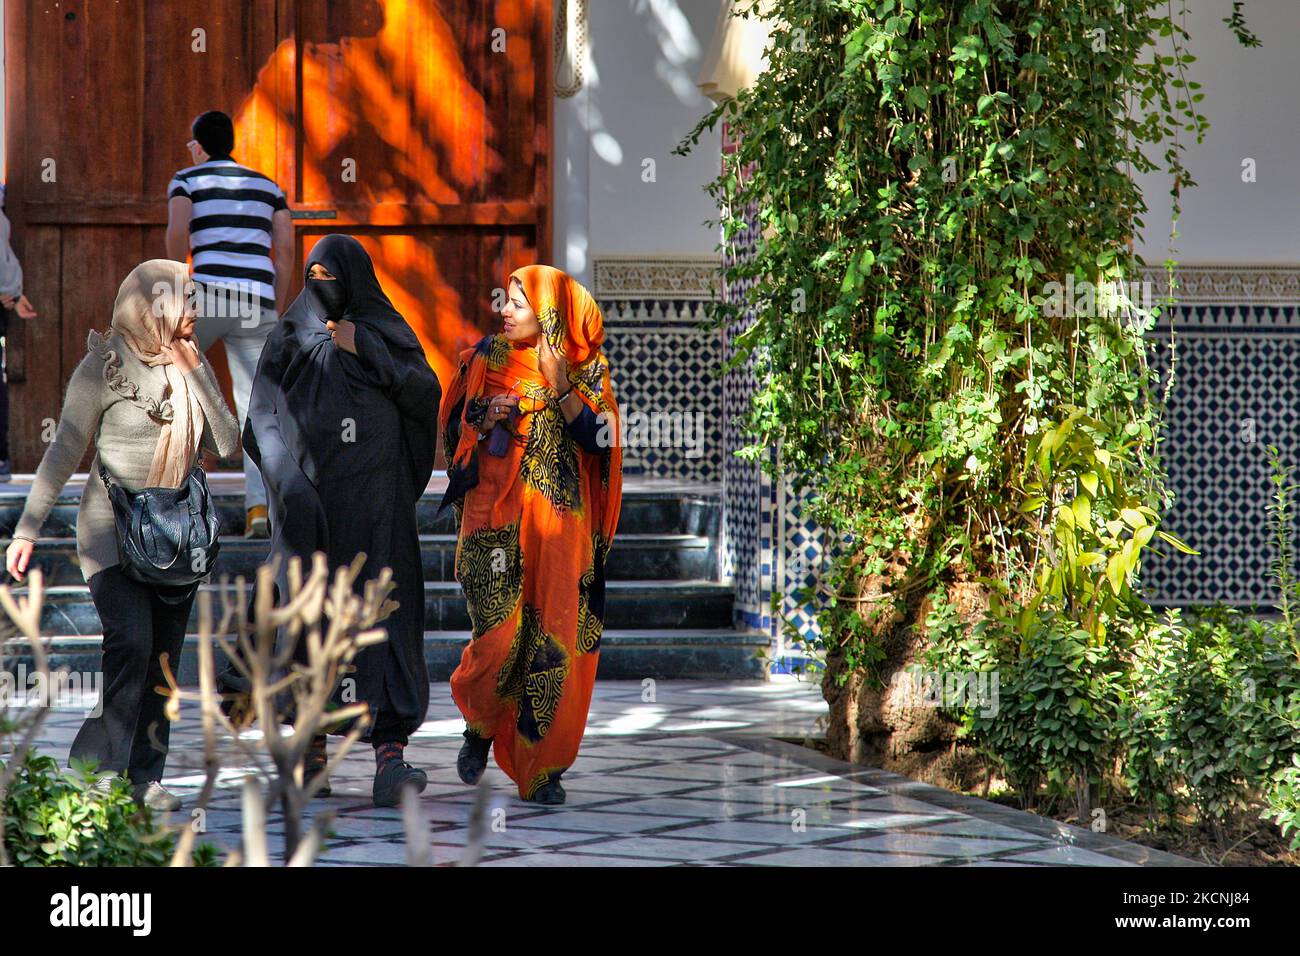 Les musulmans visitent le mausolée de Moulay Ali Cherif à Rissani, Maroc, Afrique. C'est le dernier lieu de repos du fondateur de la dynastie marocaine (actuelle) Alaouite et de plusieurs de ses fils. Alors que la porte et la cour élaborées sont ouvertes à tous, le mausolée lui-même et la mosquée qui y est rattachée sont hors limites pour les non-musulmans. (Photo de Creative Touch Imaging Ltd./NurPhoto) Banque D'Images